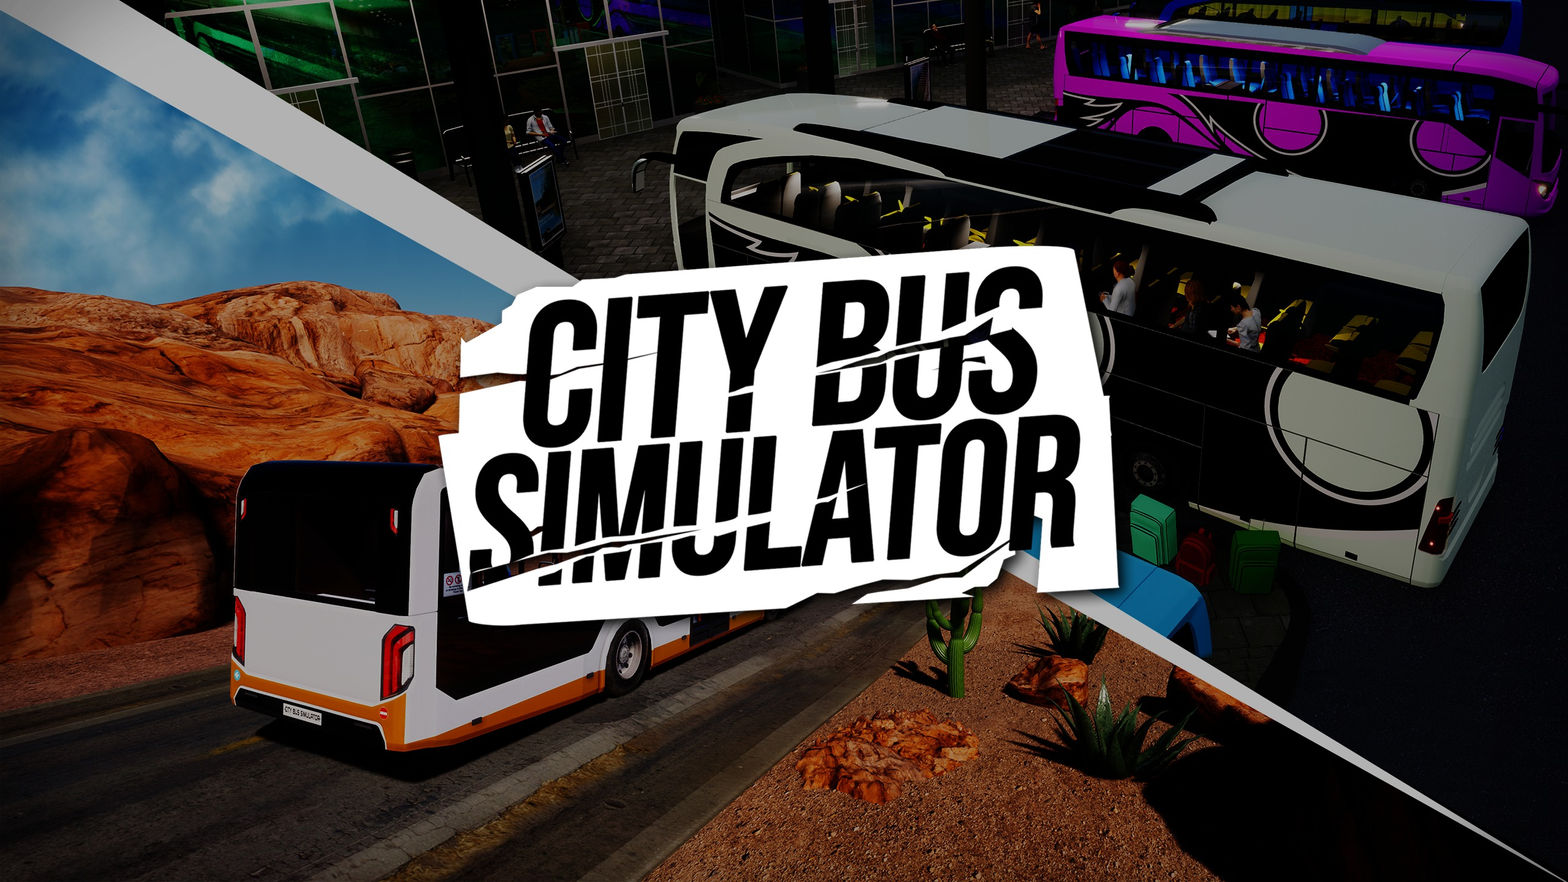 Bus Driving Game - Bus Simulator